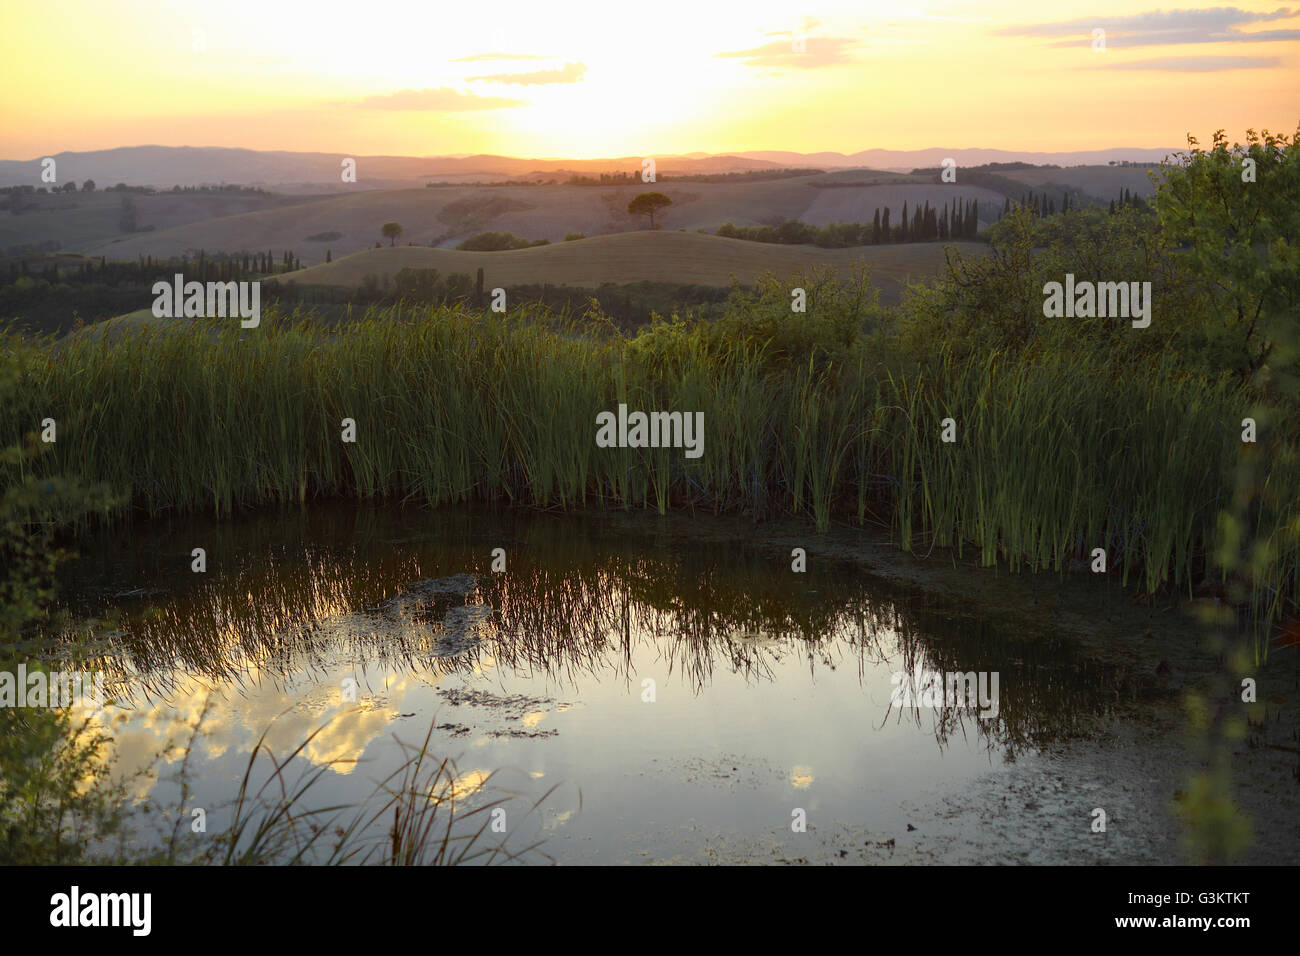 Estanque y un paisaje de colinas lejanas al amanecer, Toscana, Italia Foto de stock